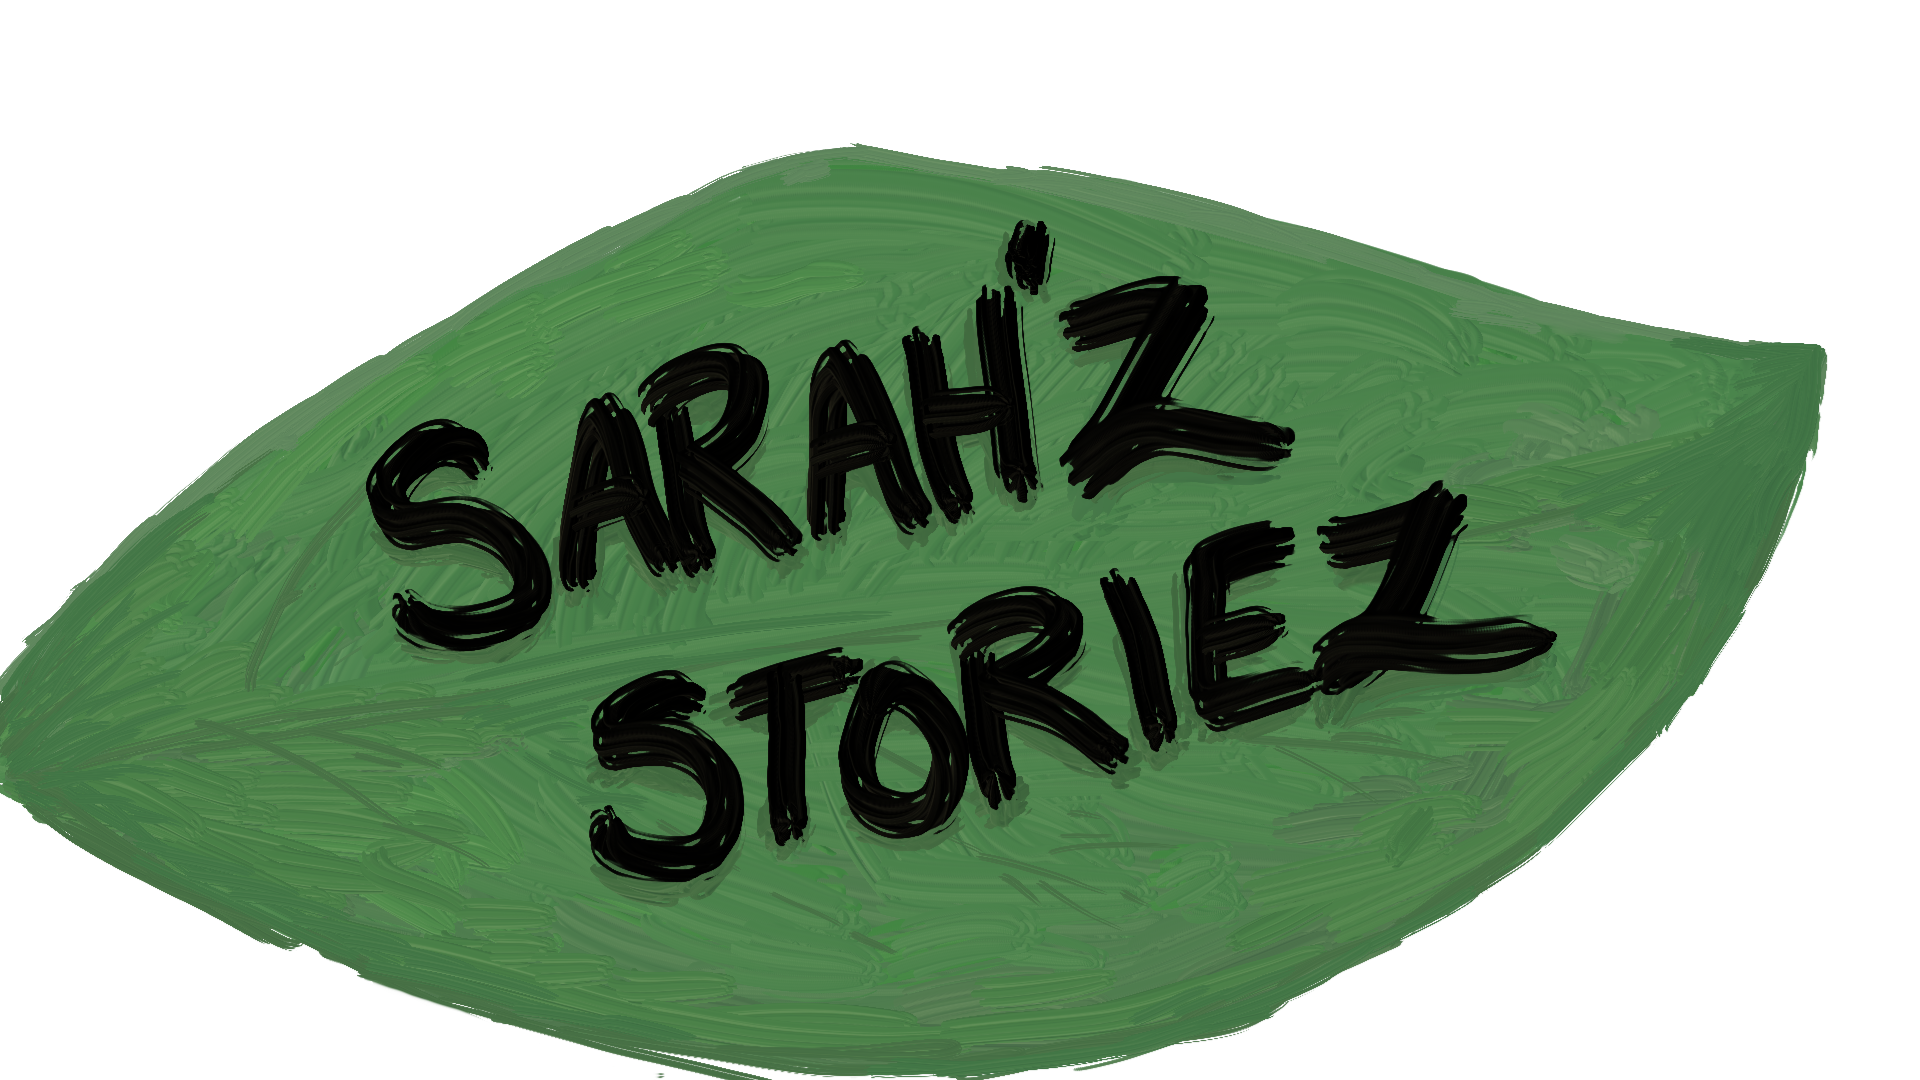 Sarah's Stories